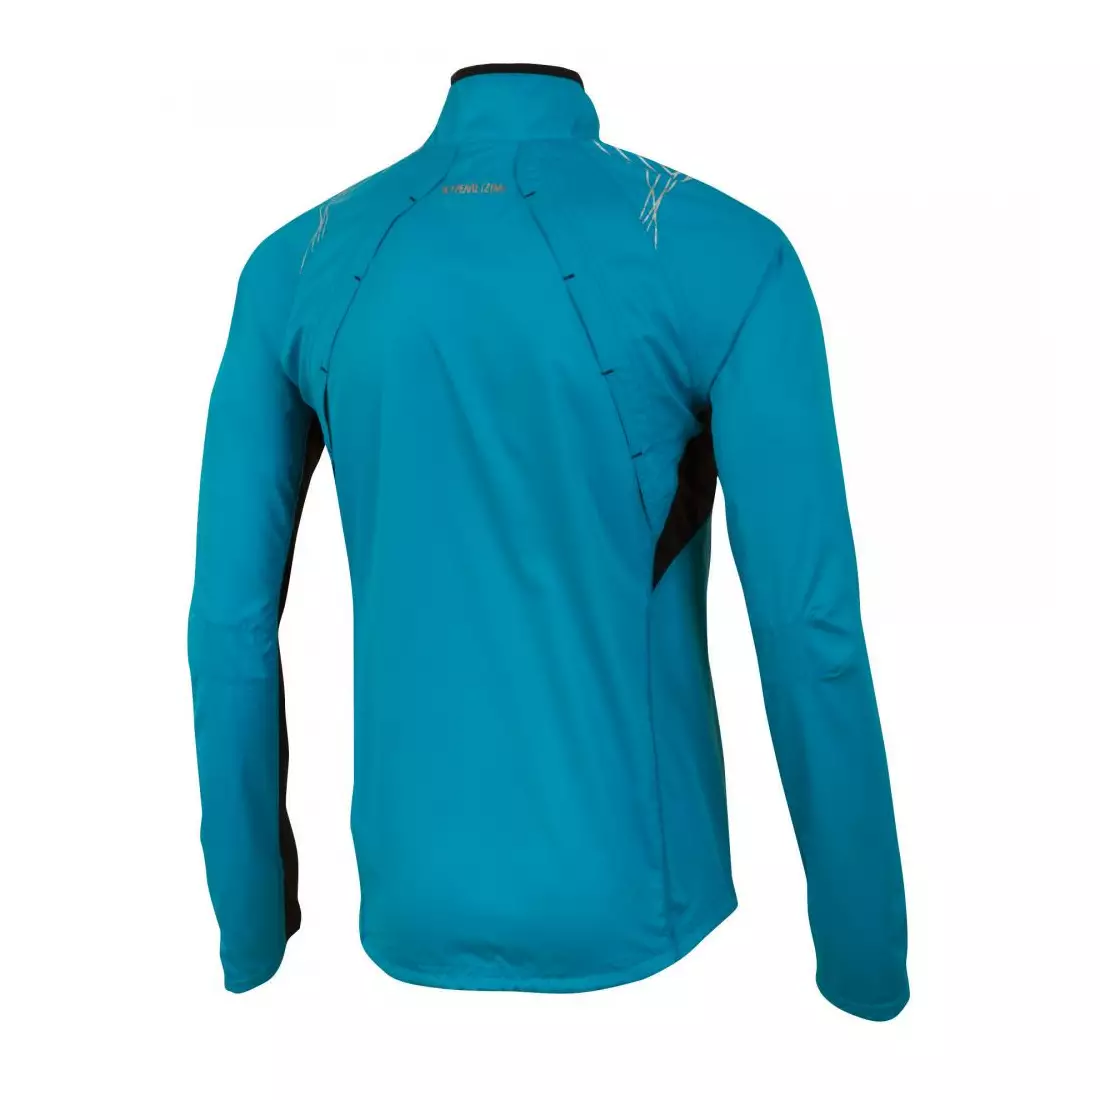 PEARL IZUMI - ELITE Infinity Jacket 12131101-3PK - jachetă alergare bărbați, culoare: Albastru